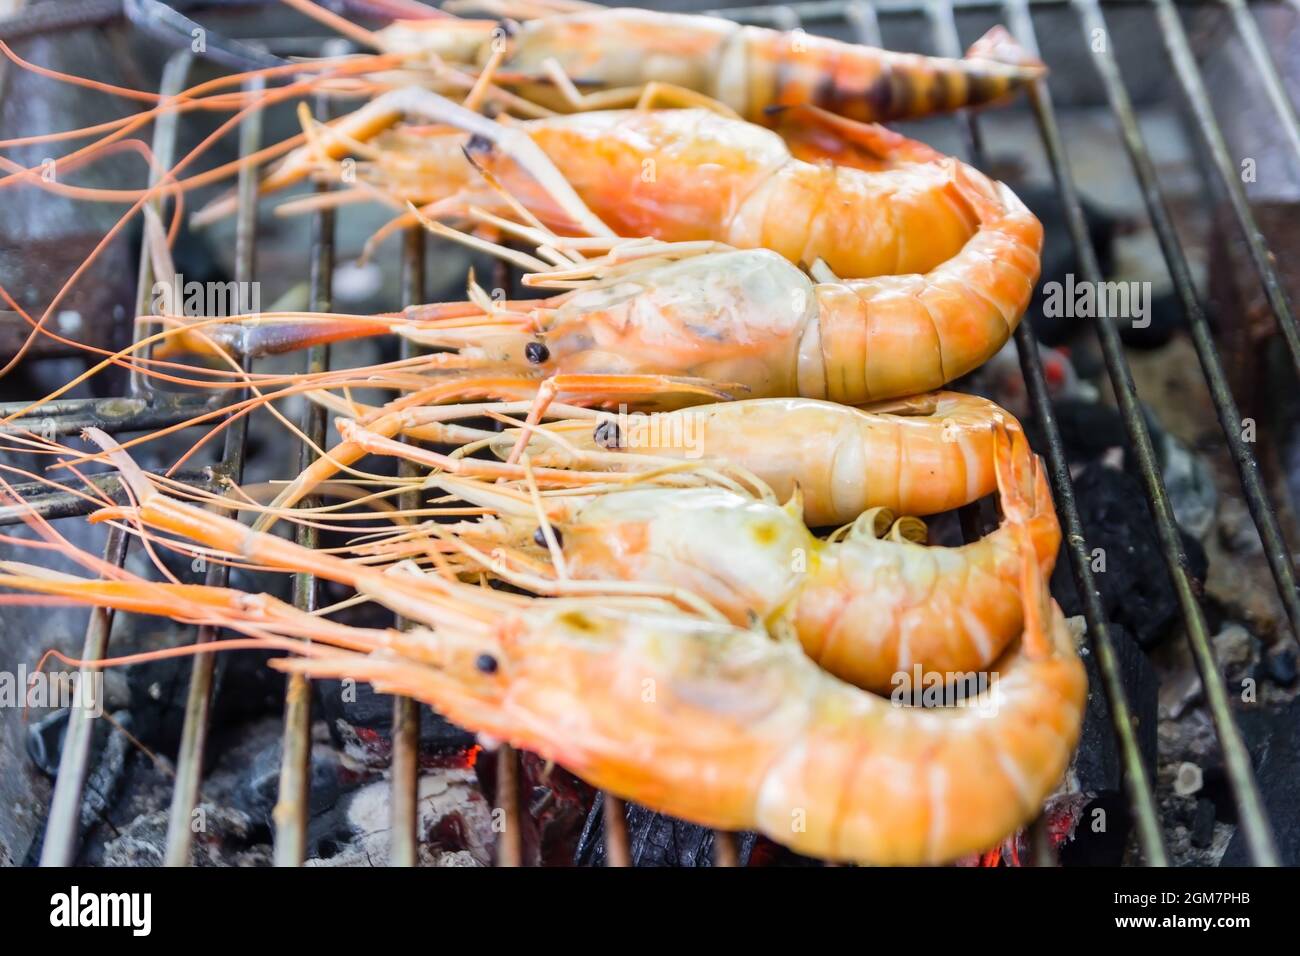 Crevettes de rivière ou crevettes de rivière barbecue de fruits de mer sur poêle à charbon de bois. Gros plan sur les aliments cuits, fruits de mer thaïlandais Banque D'Images